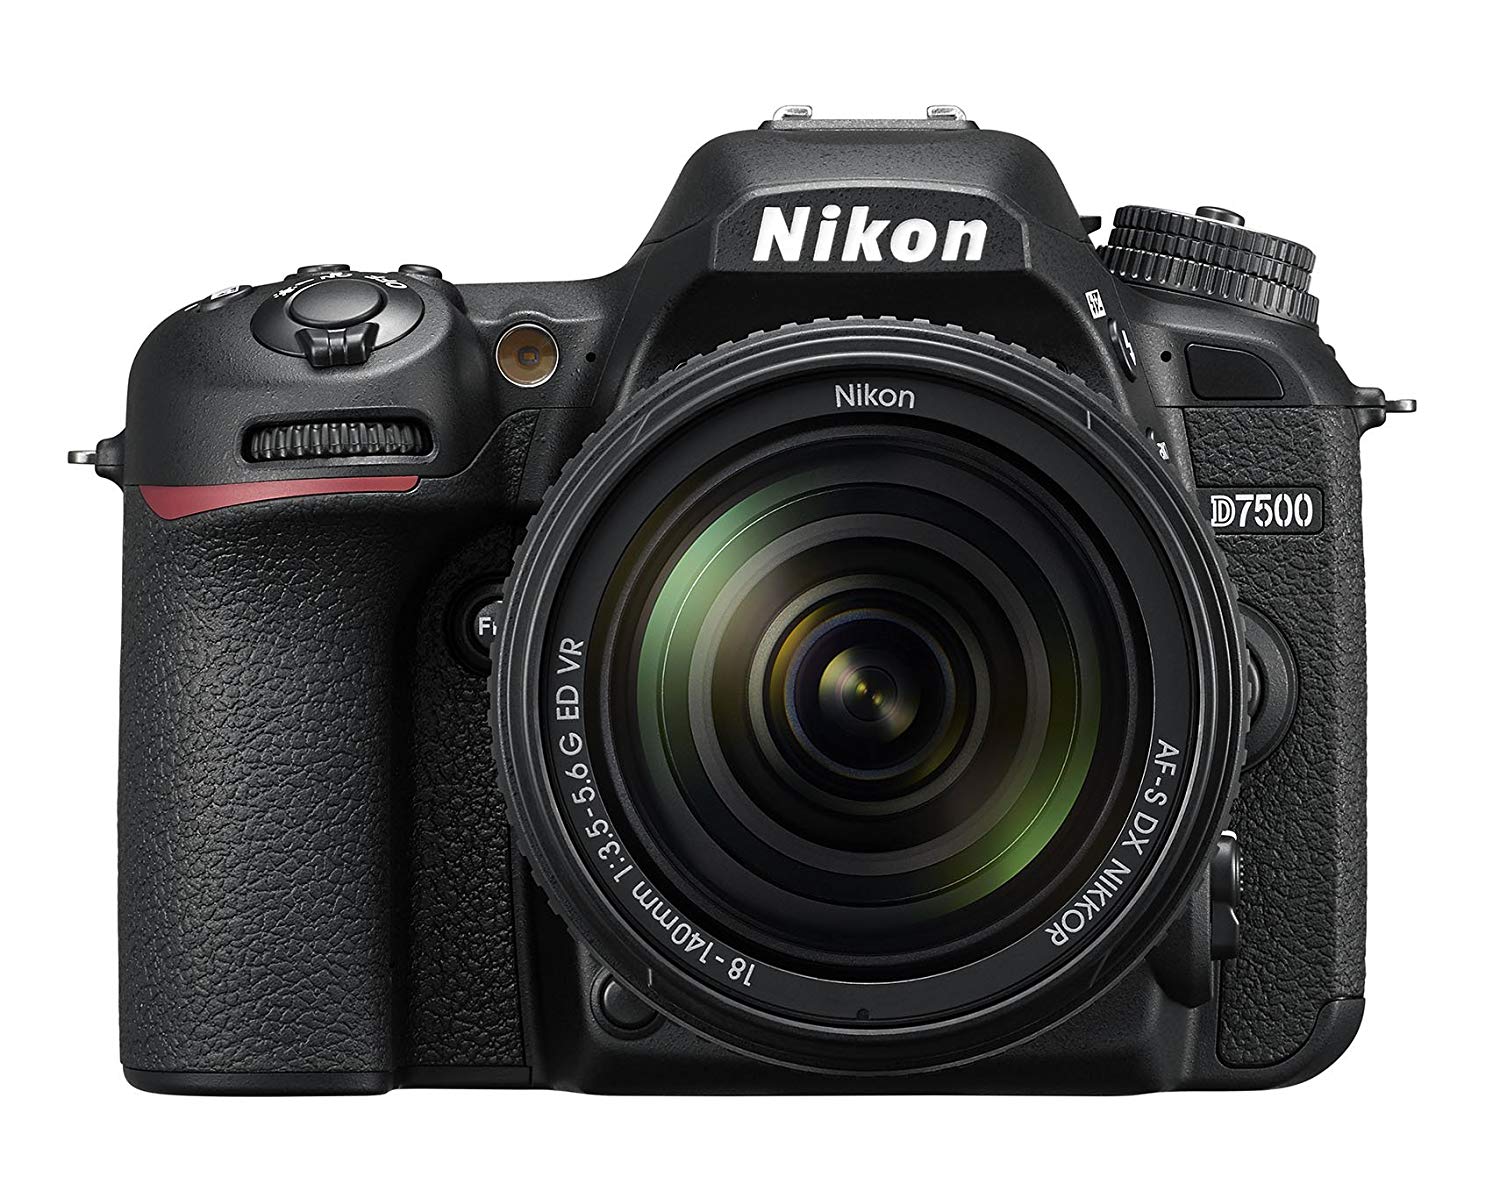 Nikon D7500 DSLR Camera With 18-140mm Lens Kit